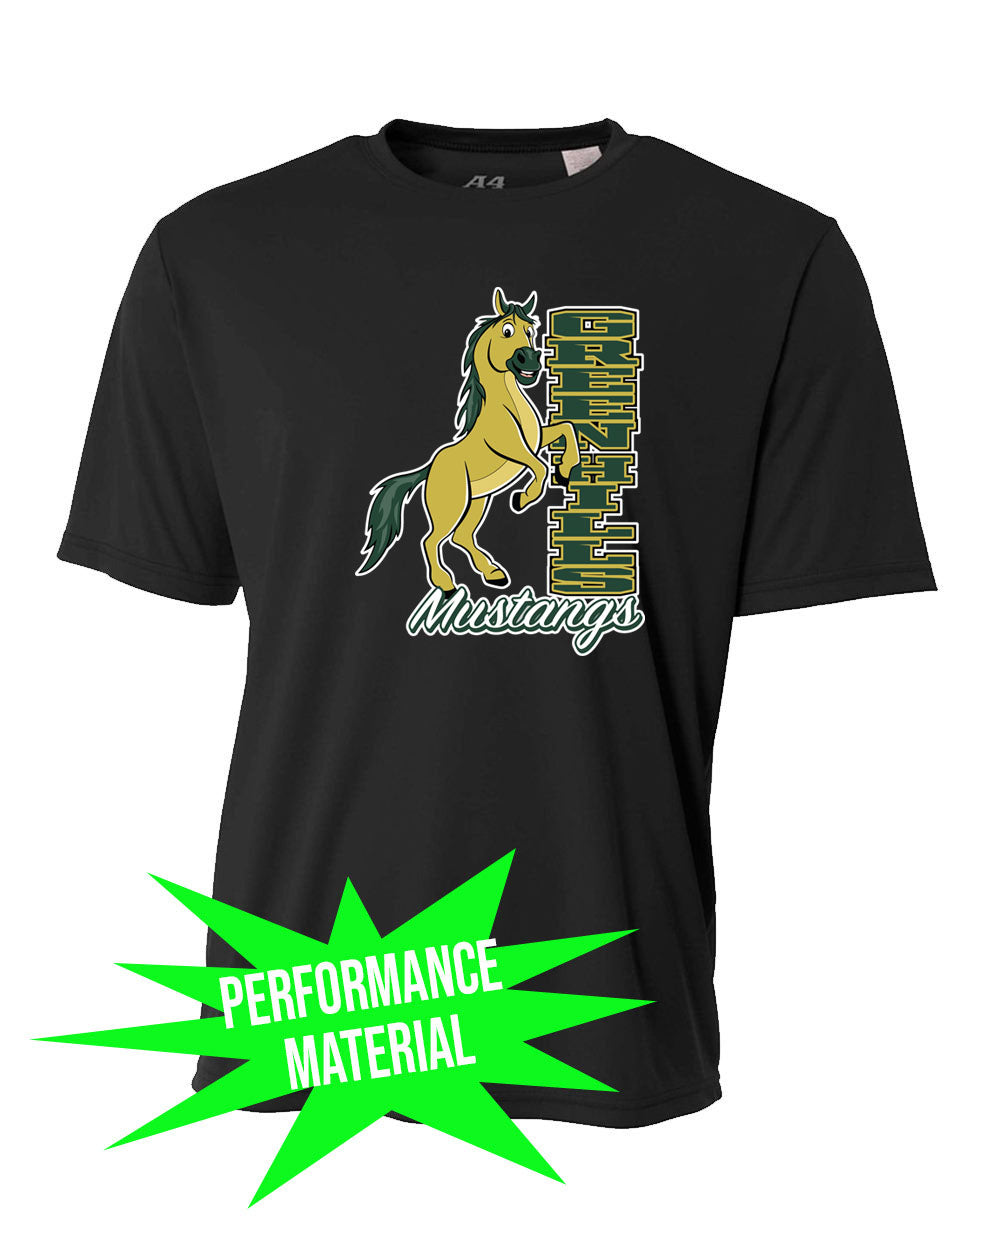 Green Hills Performance Material T-Shirt Design 15